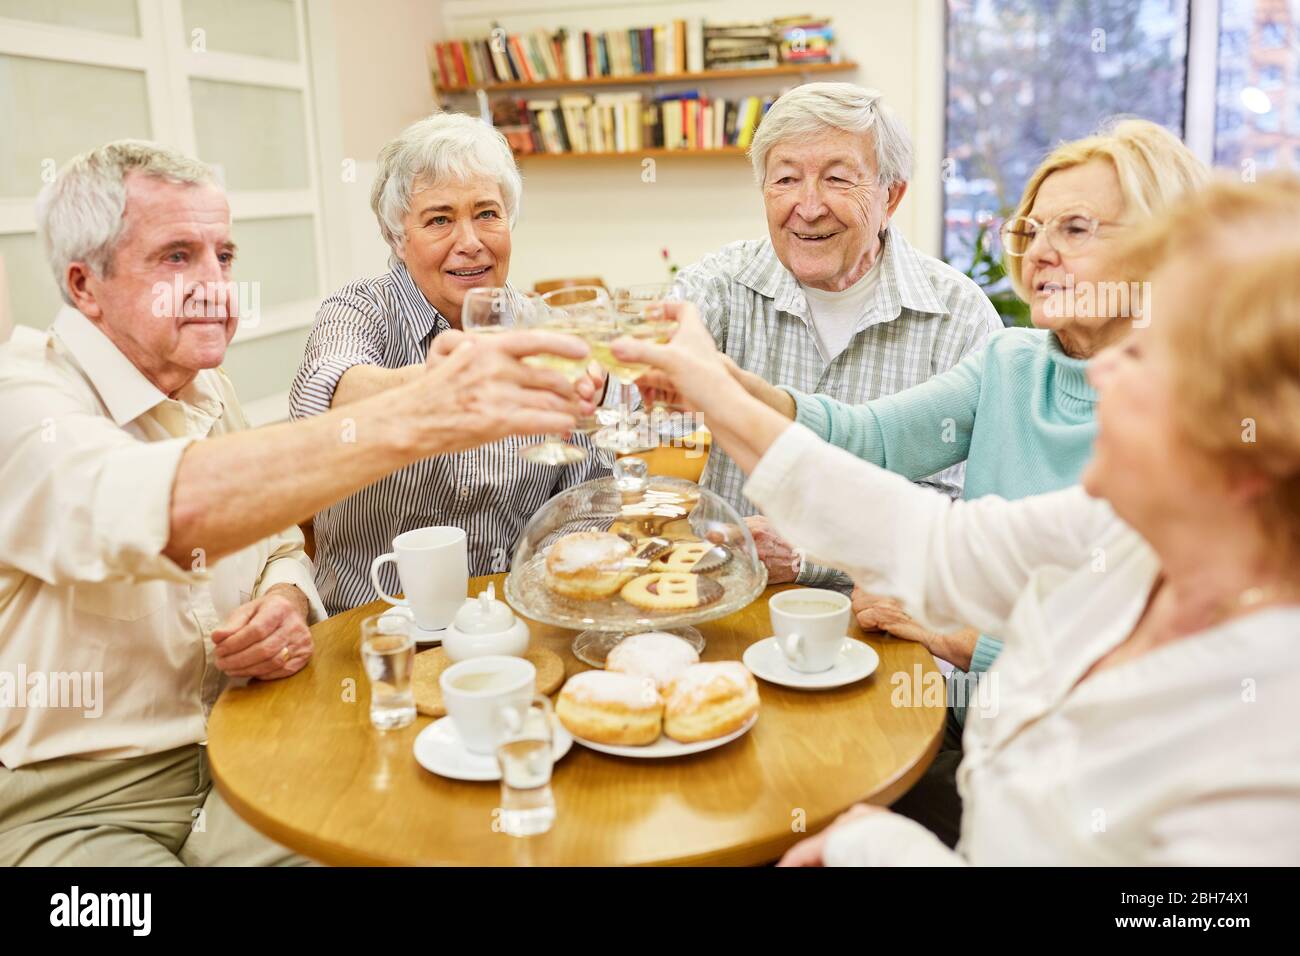 Les aînés toastent avec un verre de vin blanc et célèbrent ensemble un anniversaire Banque D'Images